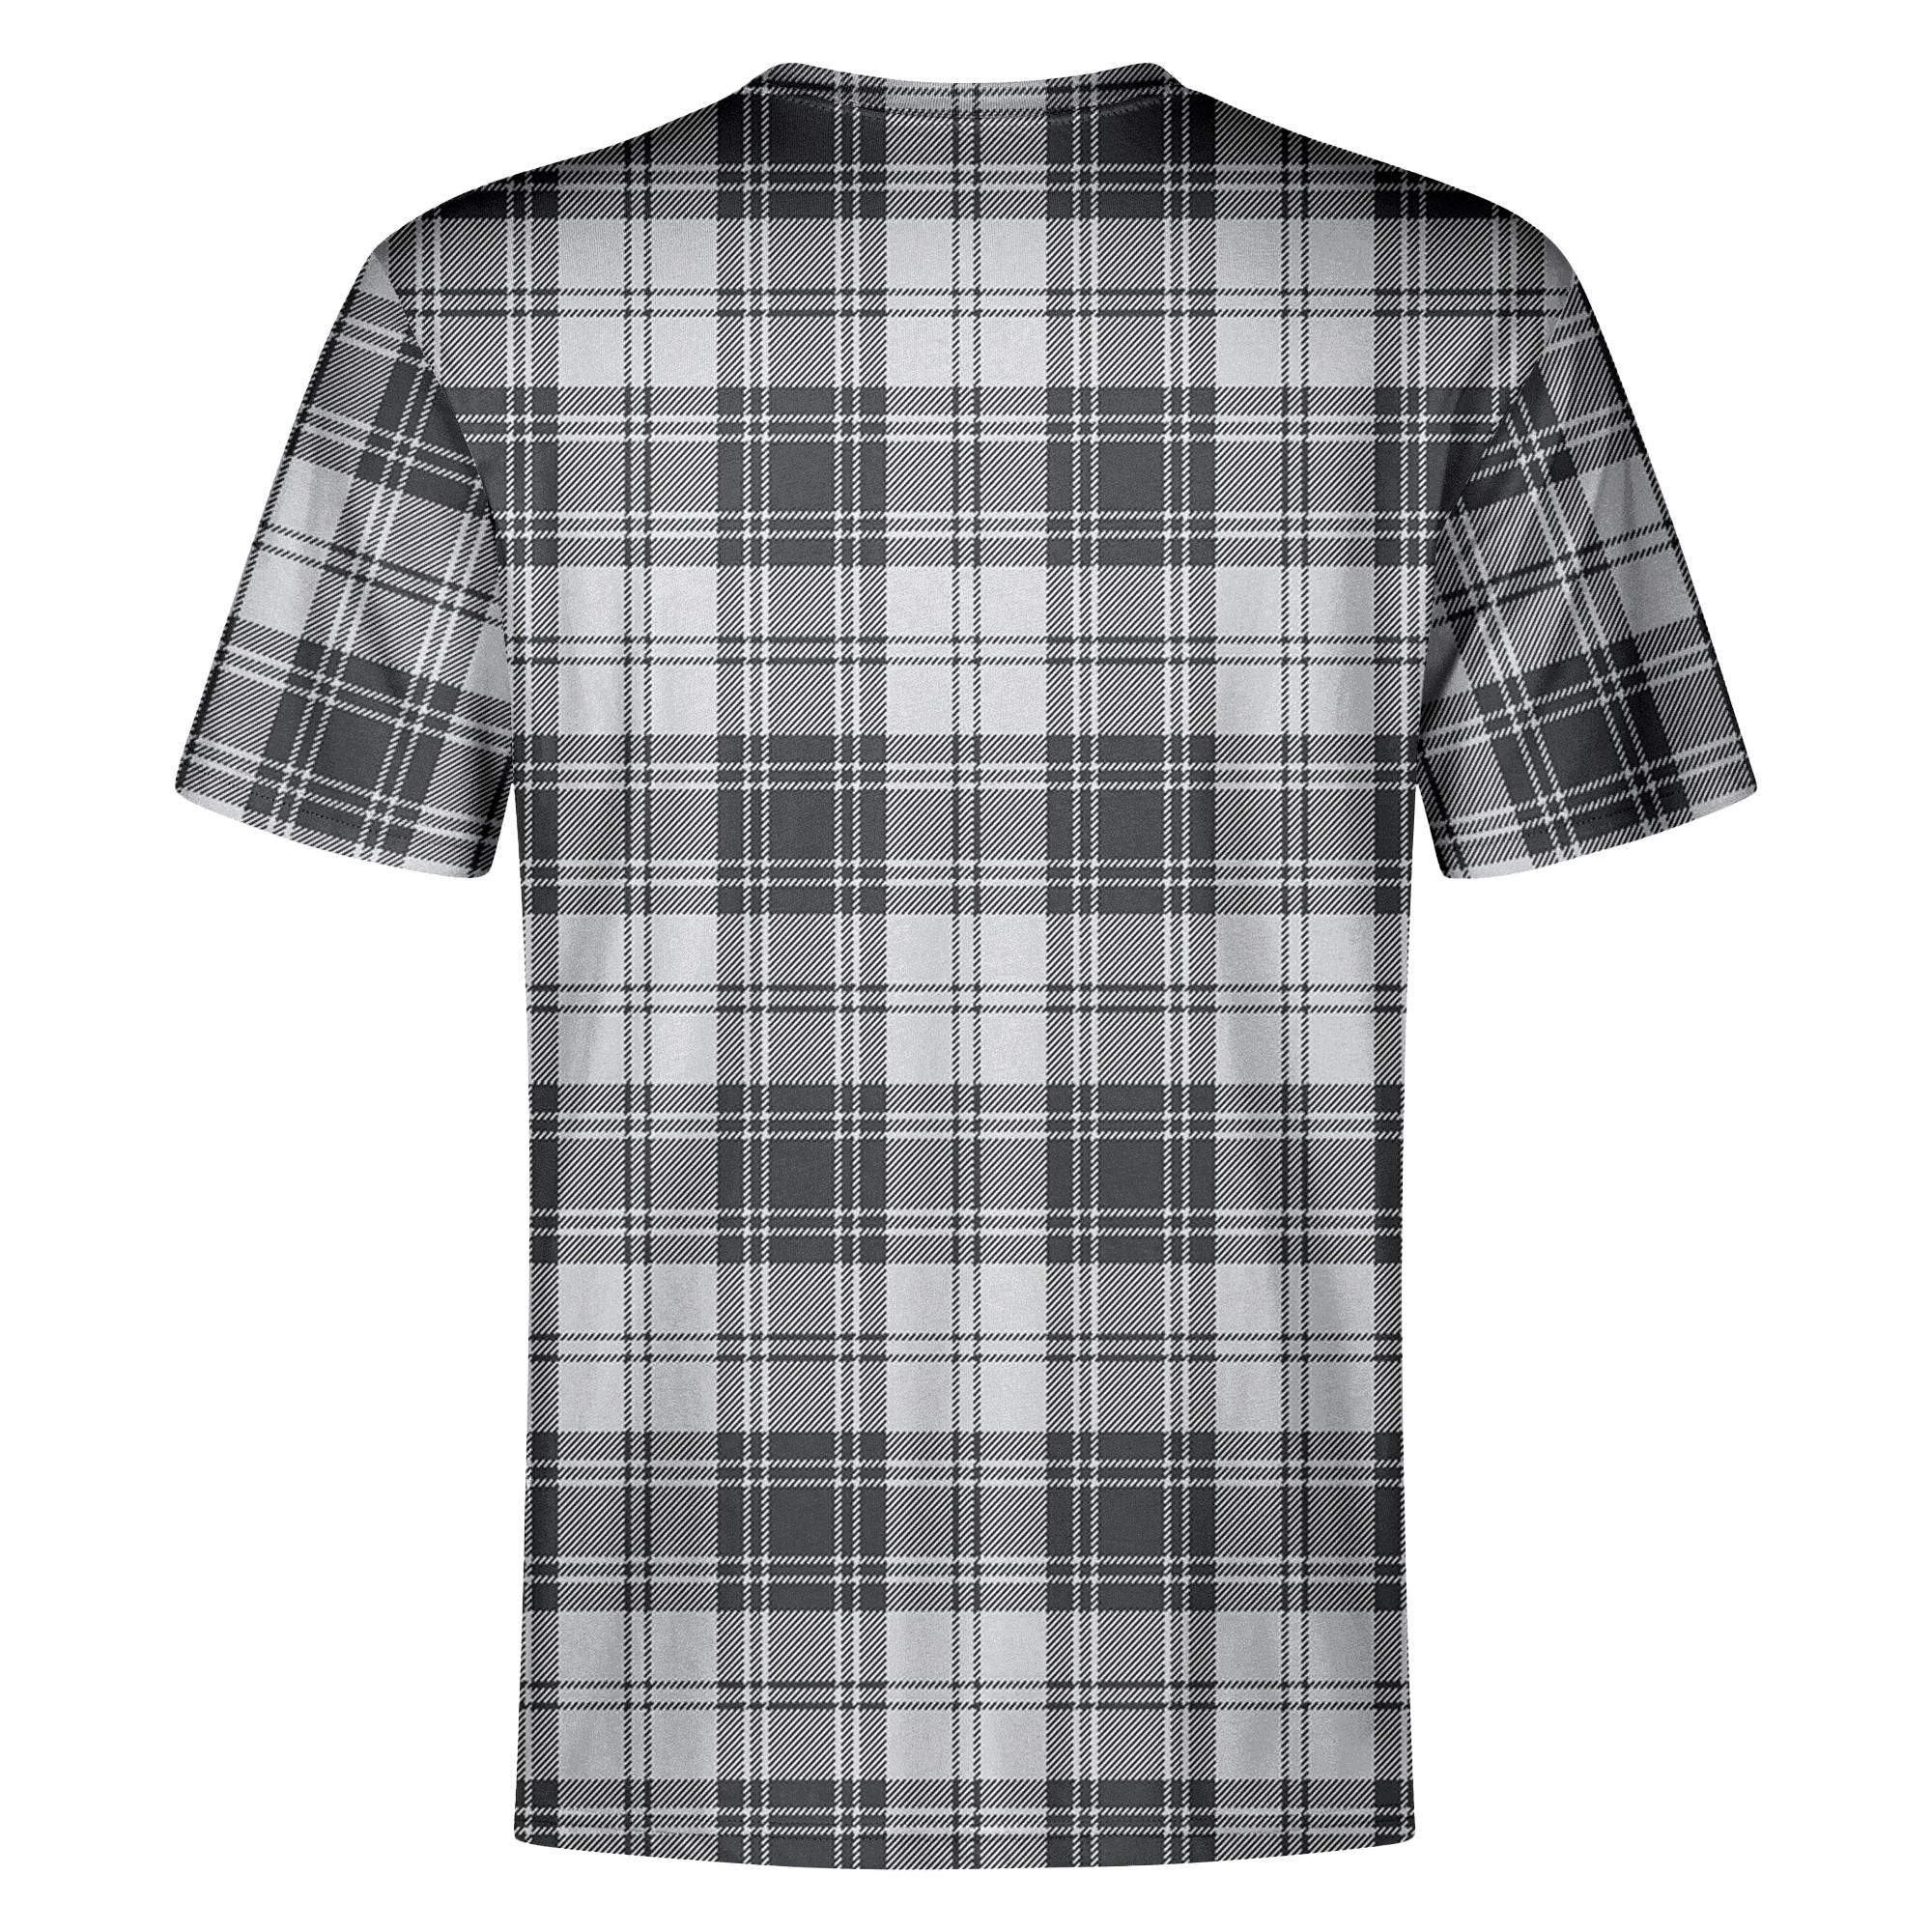 Glendinning Tartan Crest T-shirt